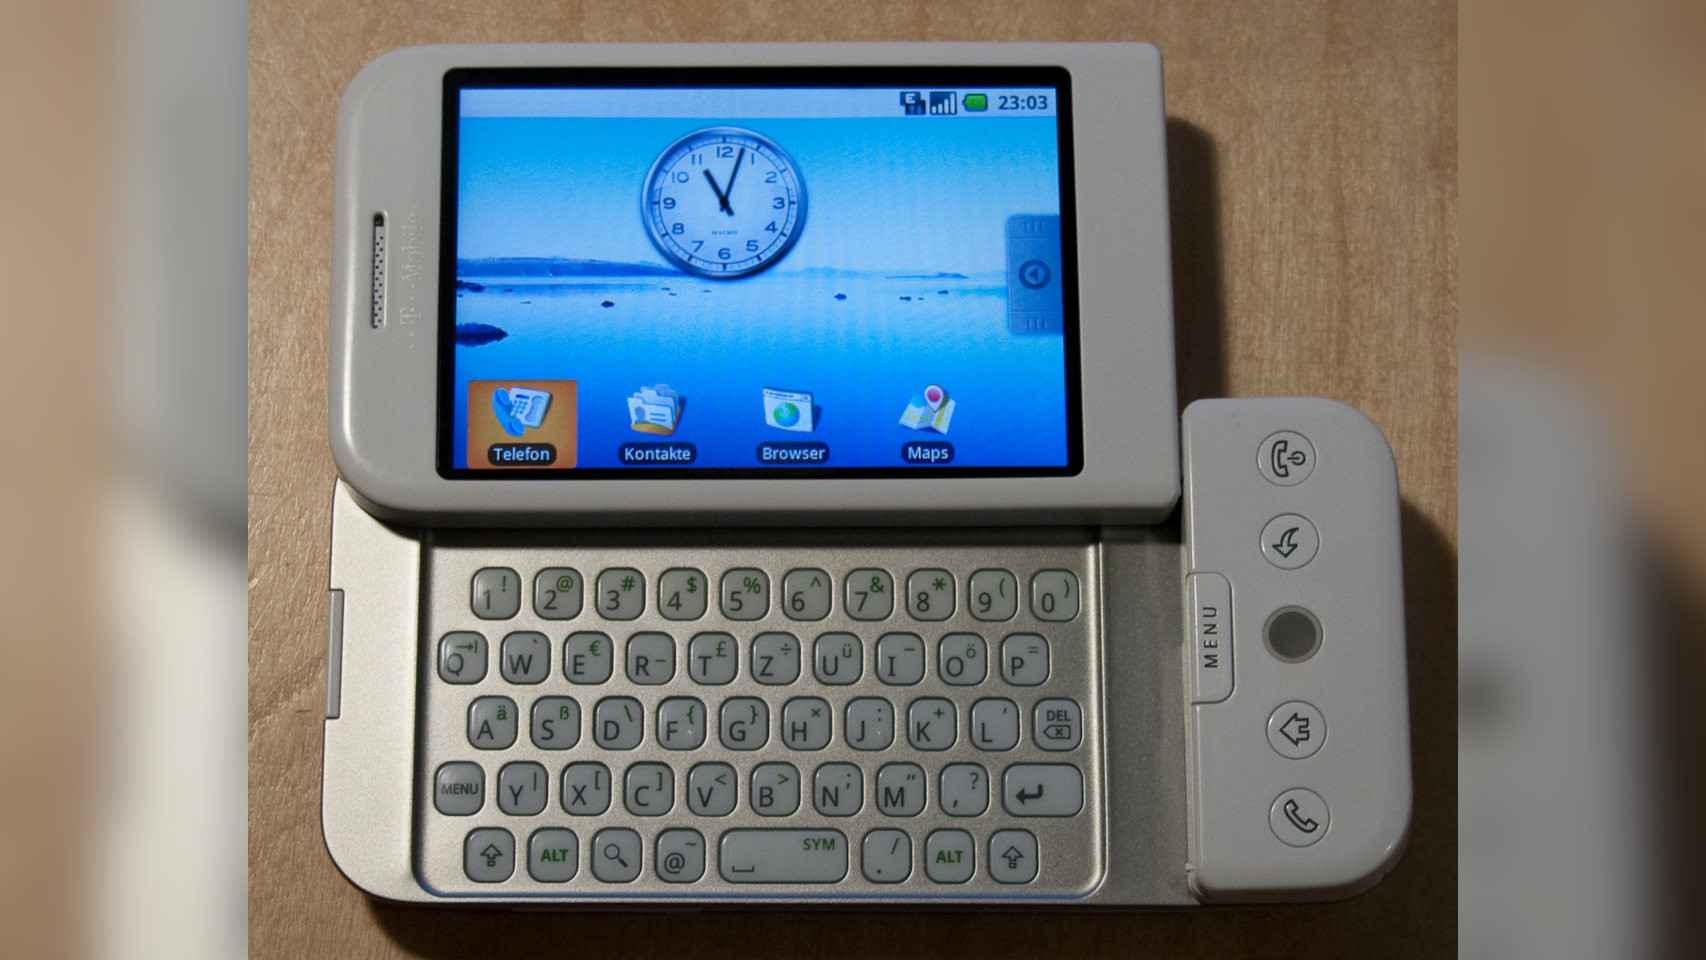 La versión final del HTC Dream era más 'seria' y apropiada para negocios